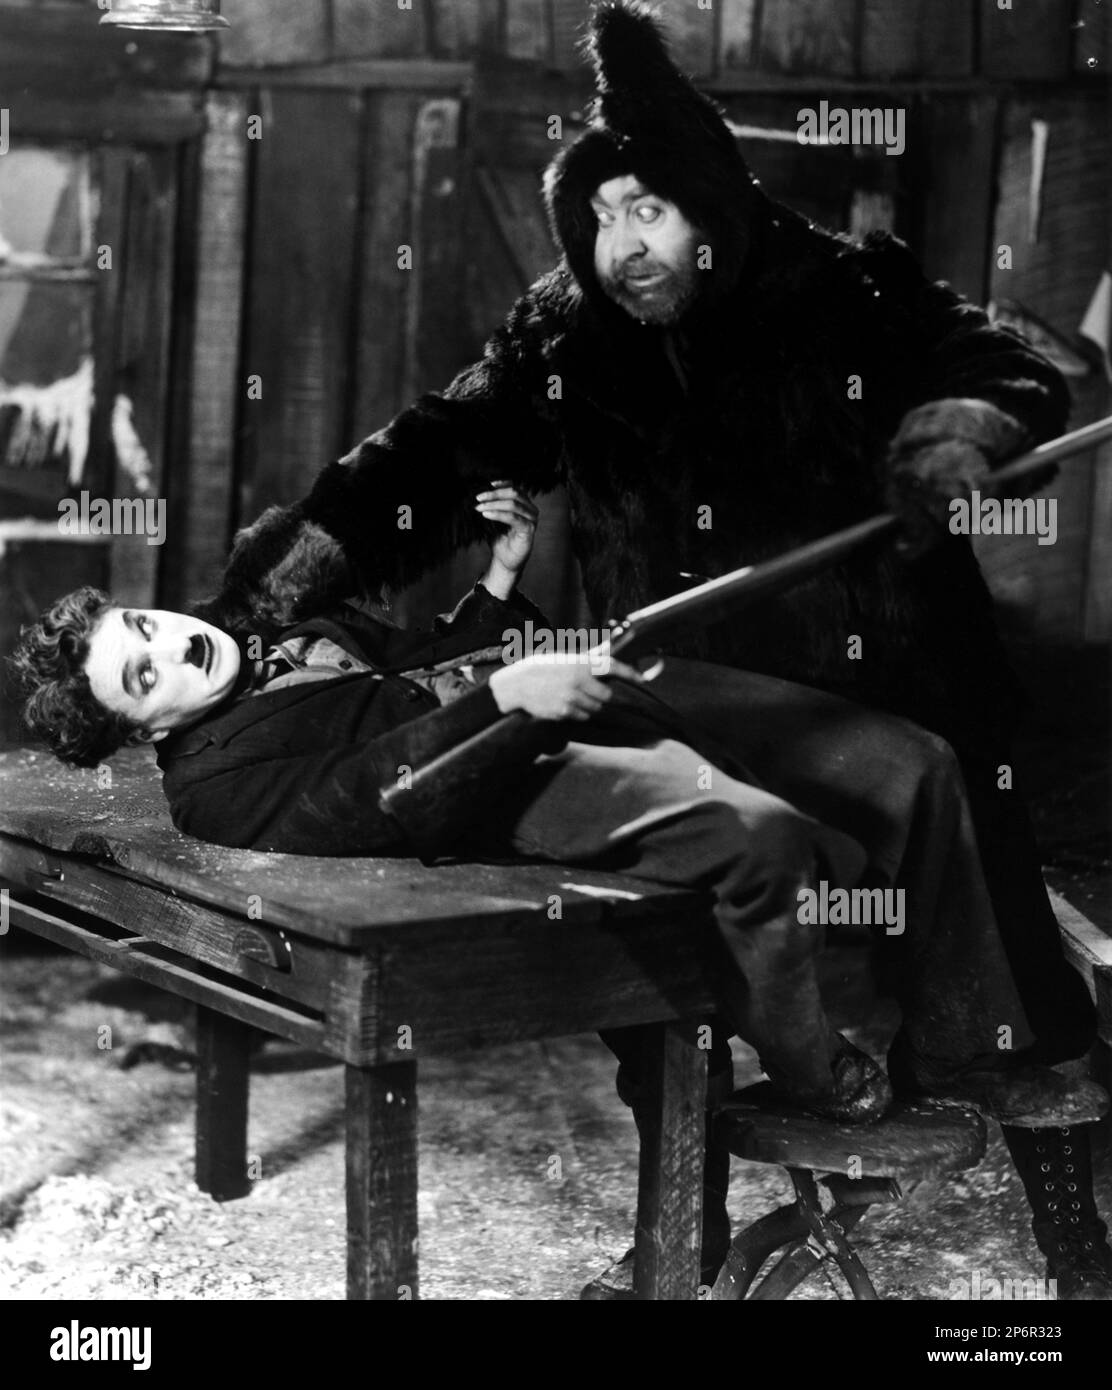 1925 : The silent movie actor and movie director CHARLES CHAPLIN ( 1889 - 1977 ) with Mack Swain in THE GOLD RUSH ( La febbre dell' oro ) - CINEMA - FILM - portrait - ritratto - regista cinematografico - attore - attrice - comico - fucile - gun - lotta - fight  ---- Archivio GBB      Archivio Stock Photo